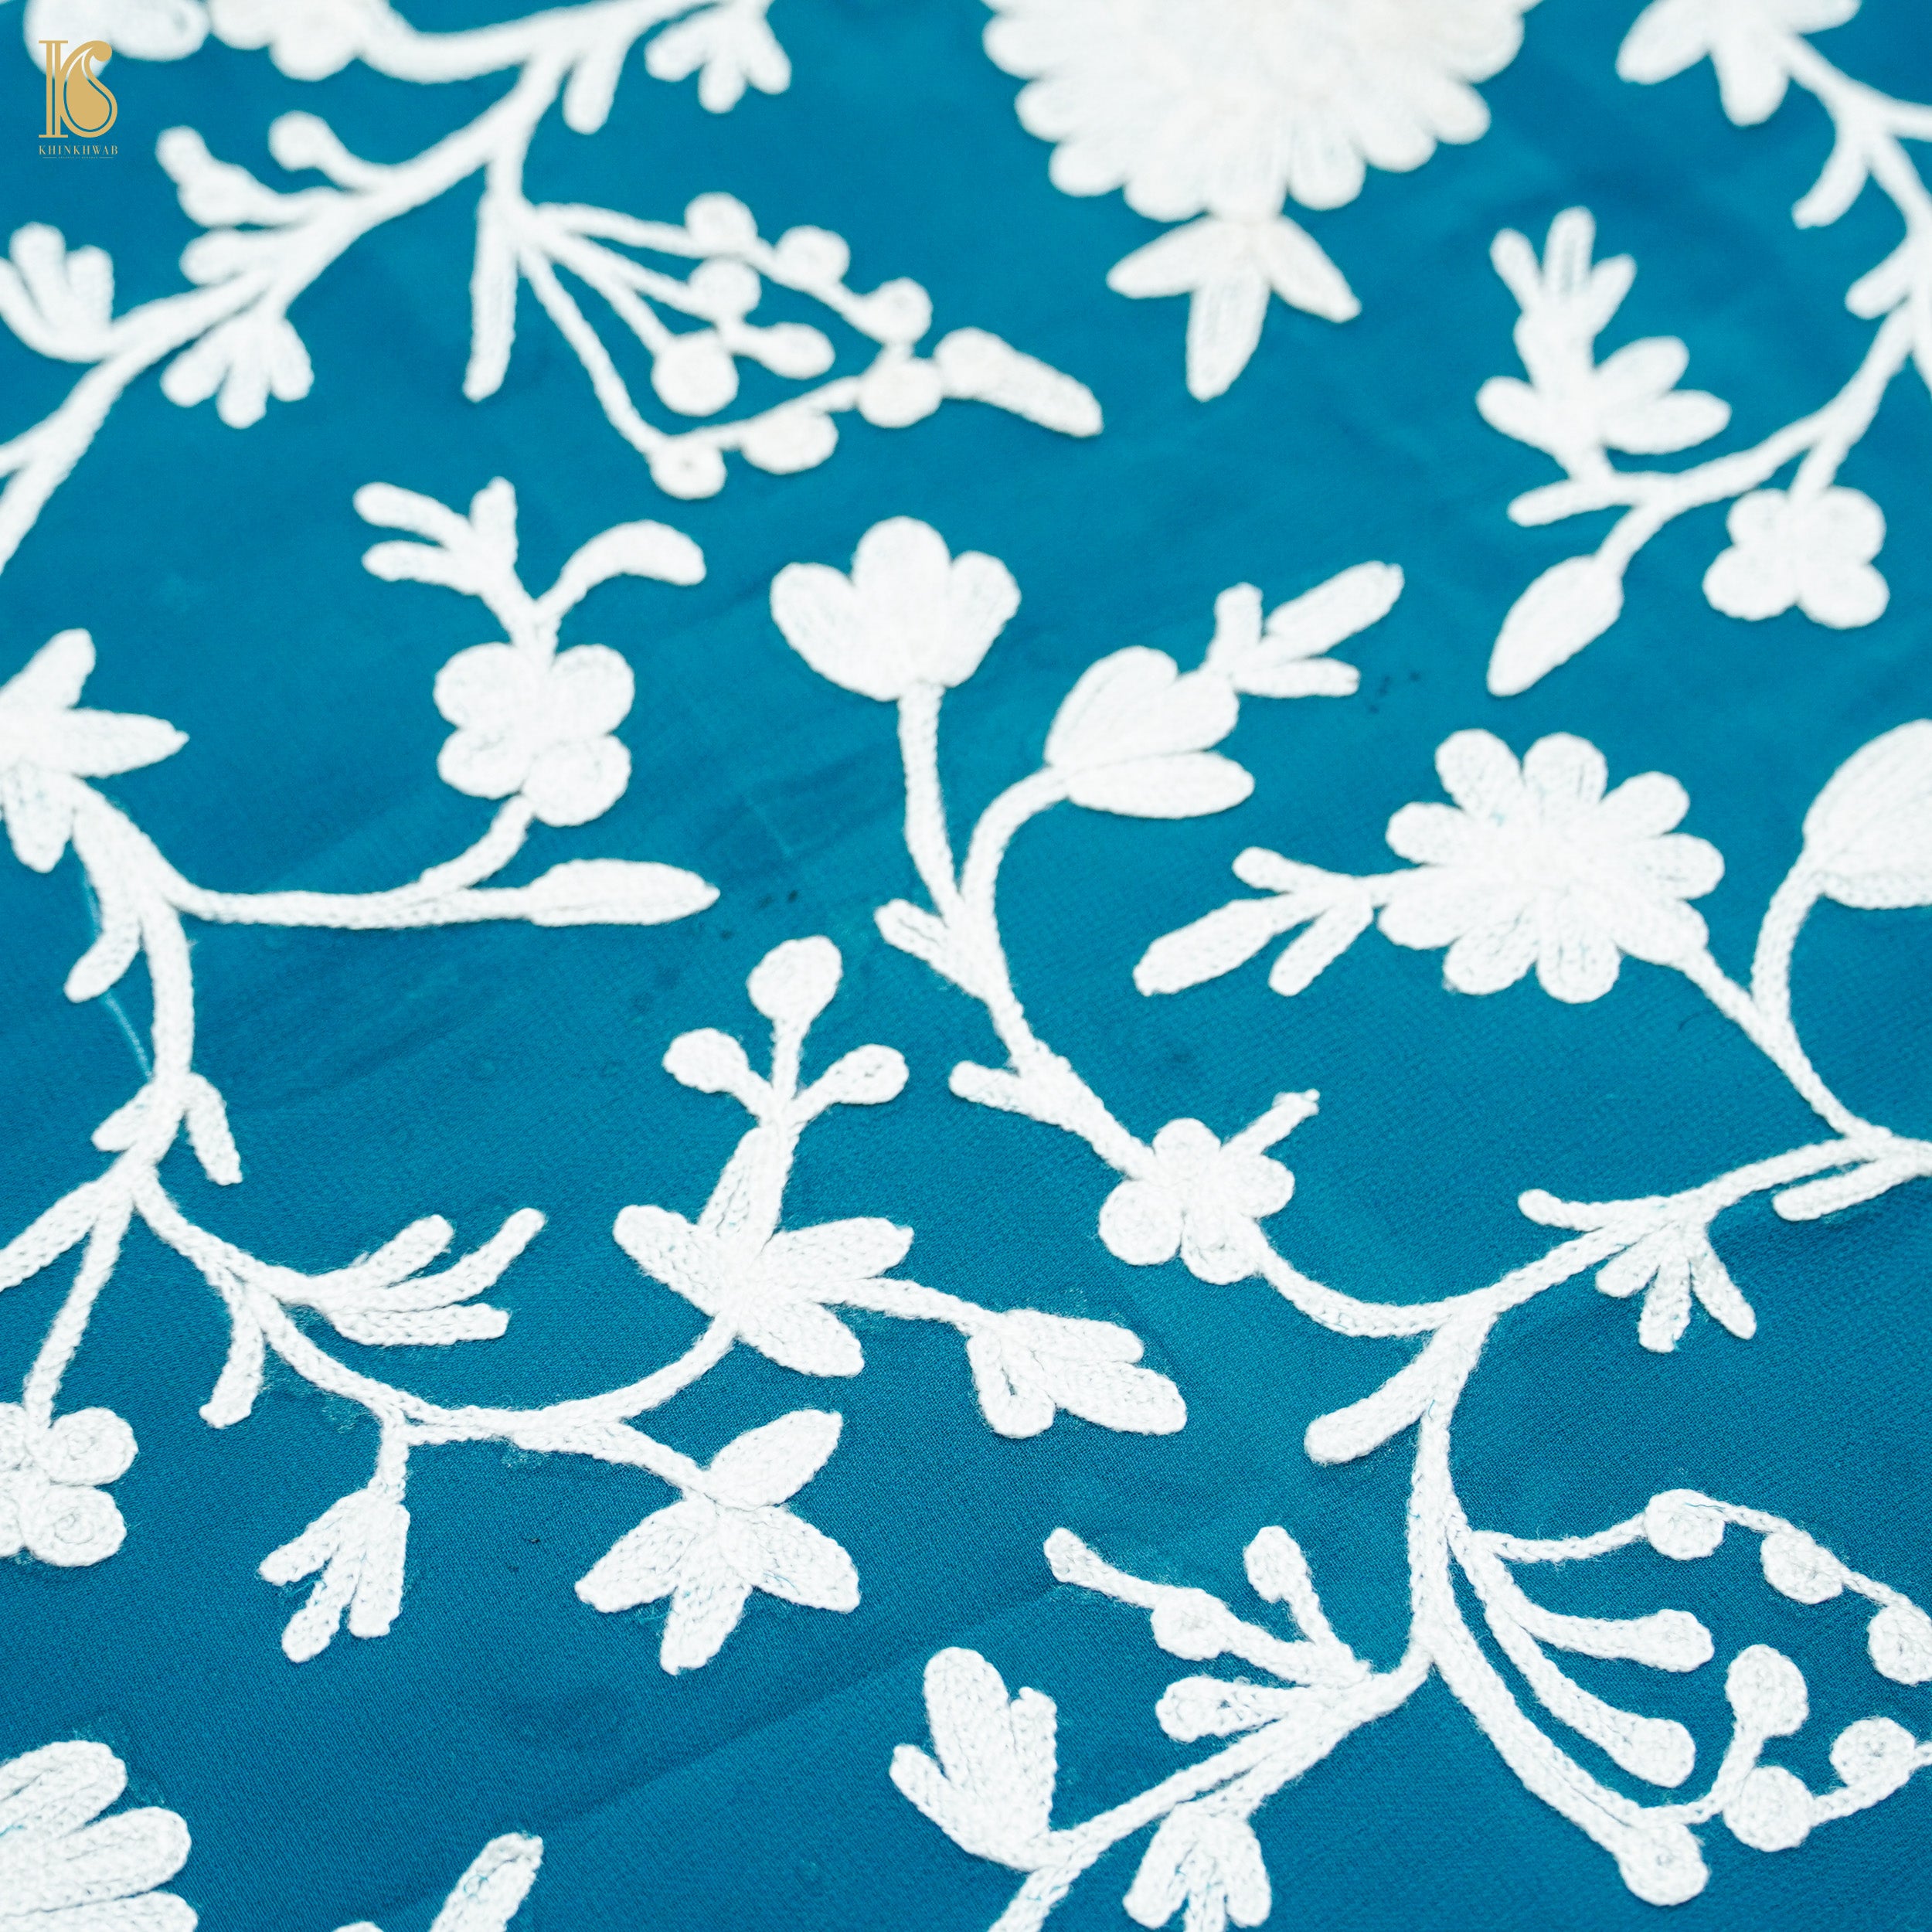 Cerulean Blue Pure Georgette Kashmiri Embroidery Saree - Khinkhwab